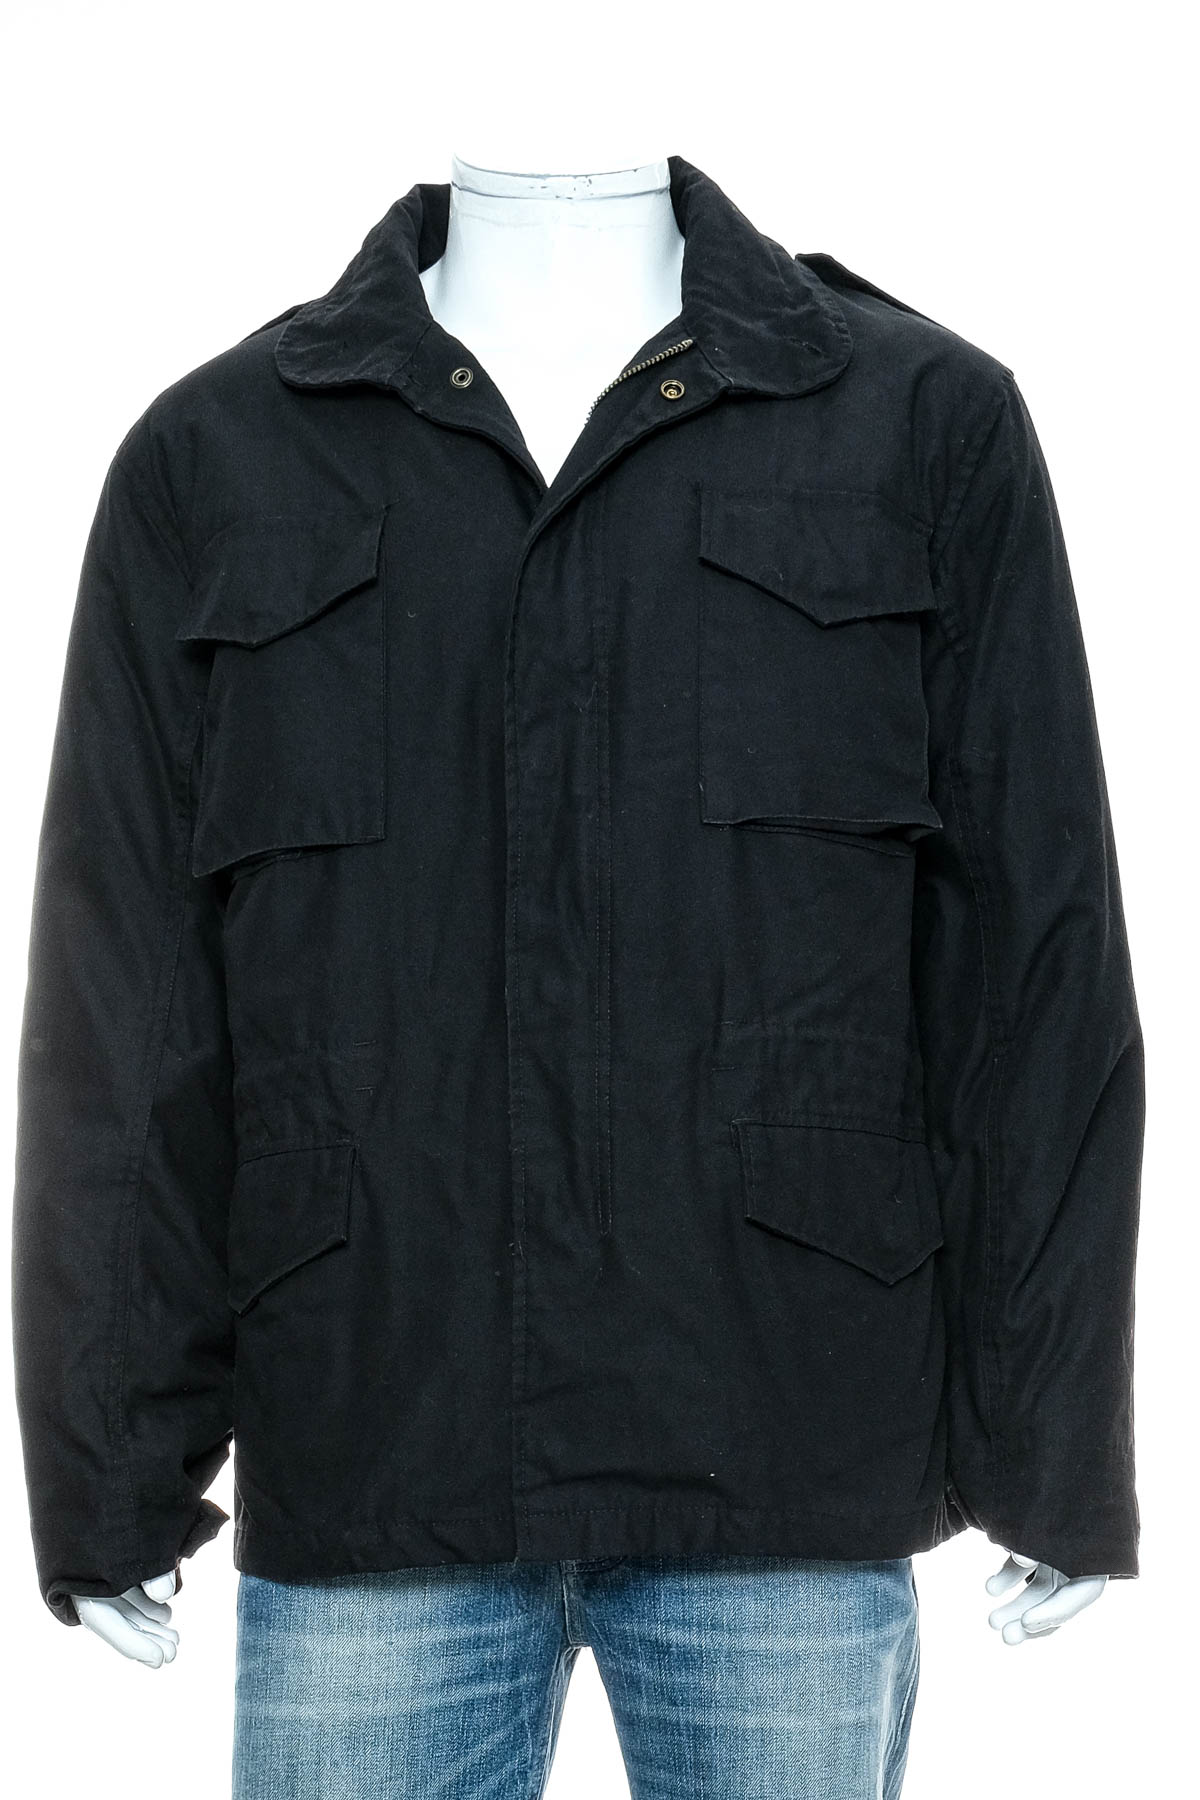 Men's jacket - Brandit - 0